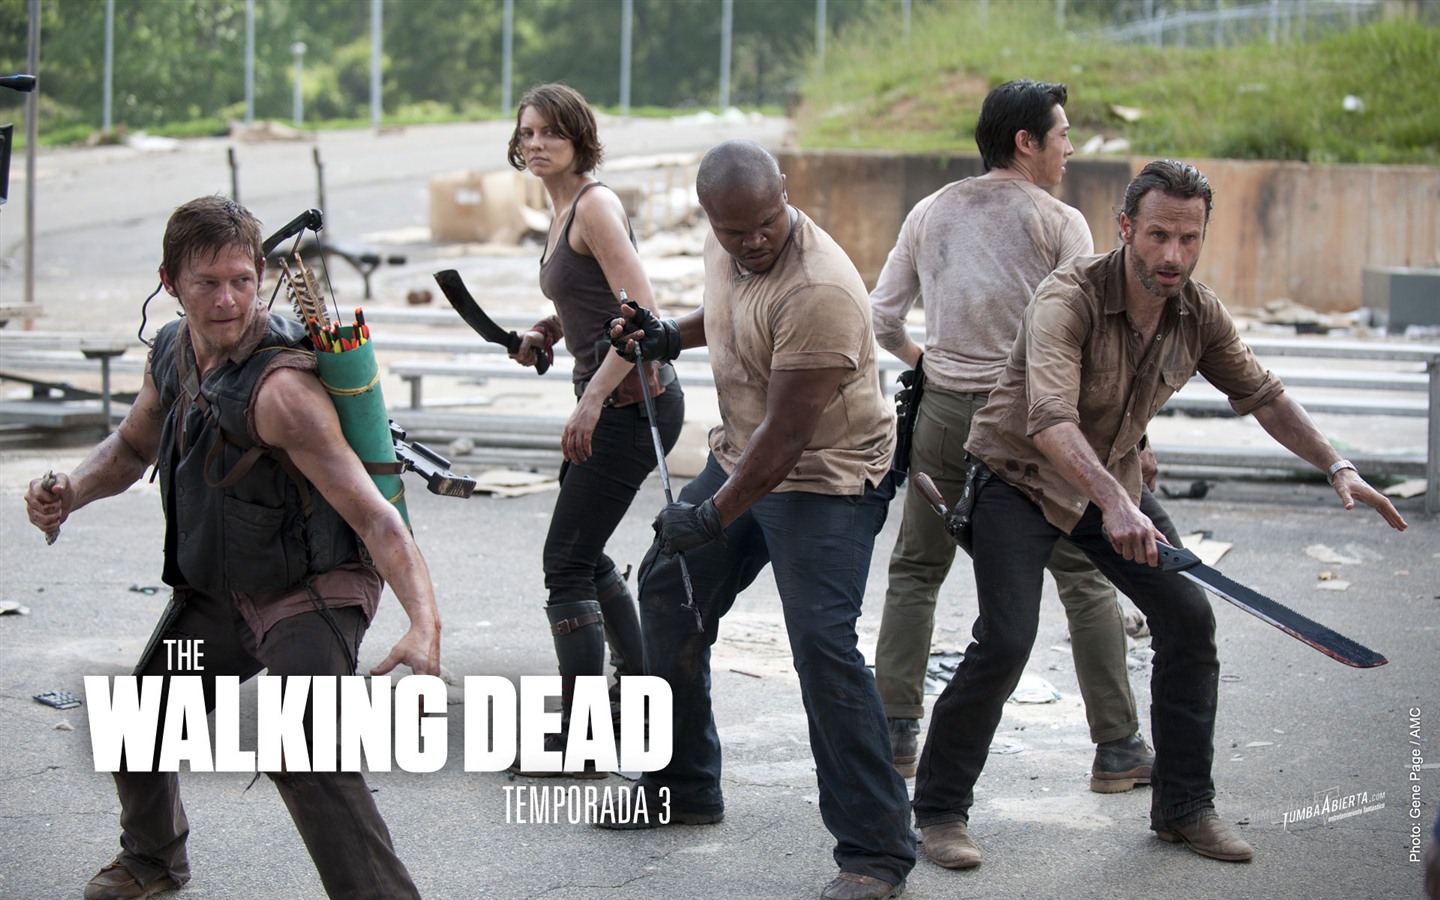 The Walking Dead HD wallpapers #16 - 1440x900